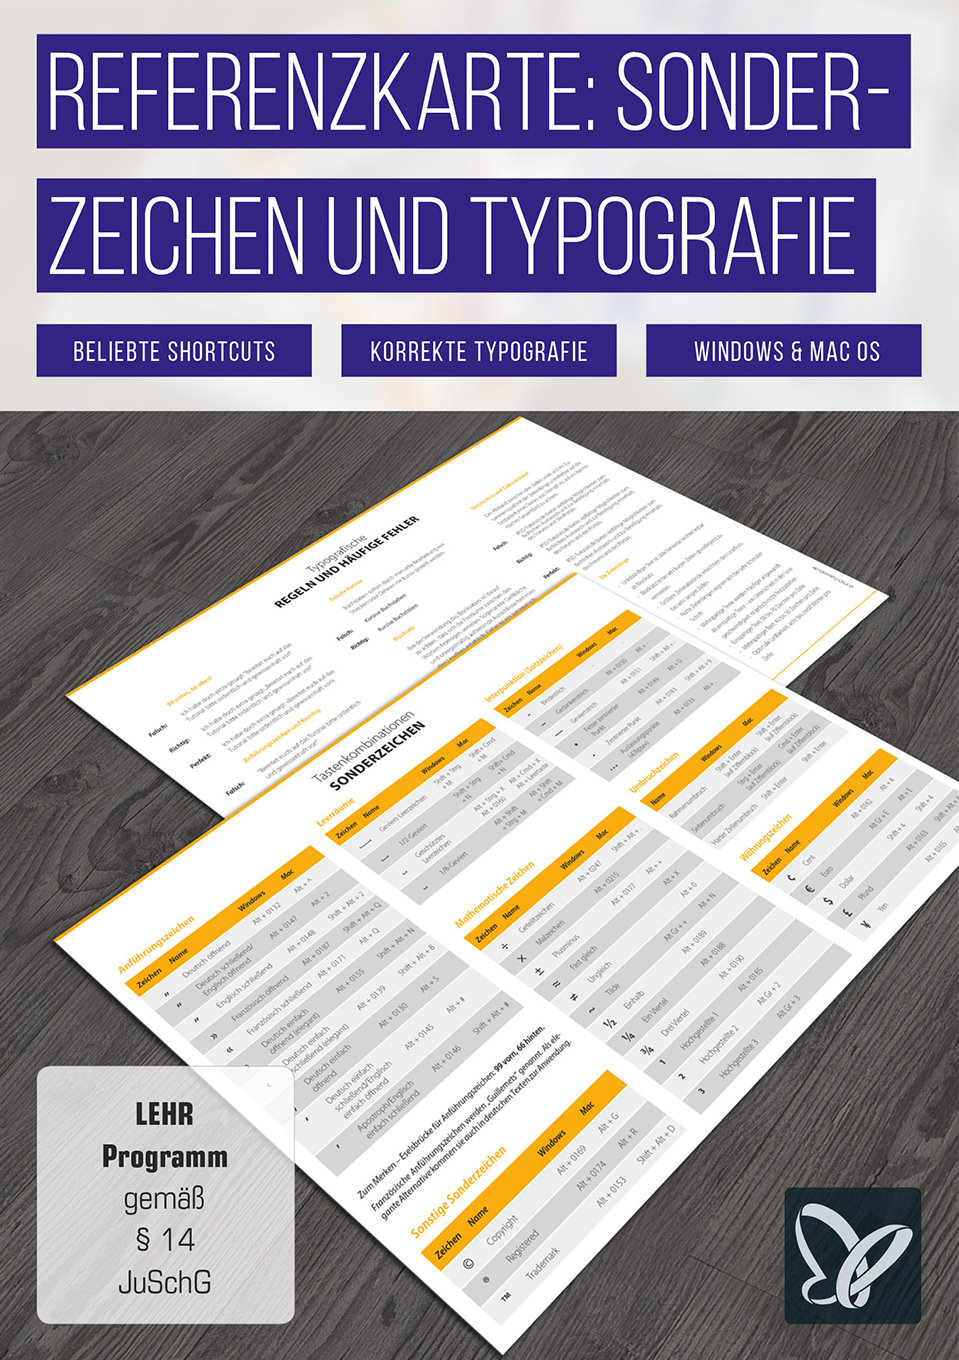 Referenzkarte für Sonderzeichen und typografische Regeln